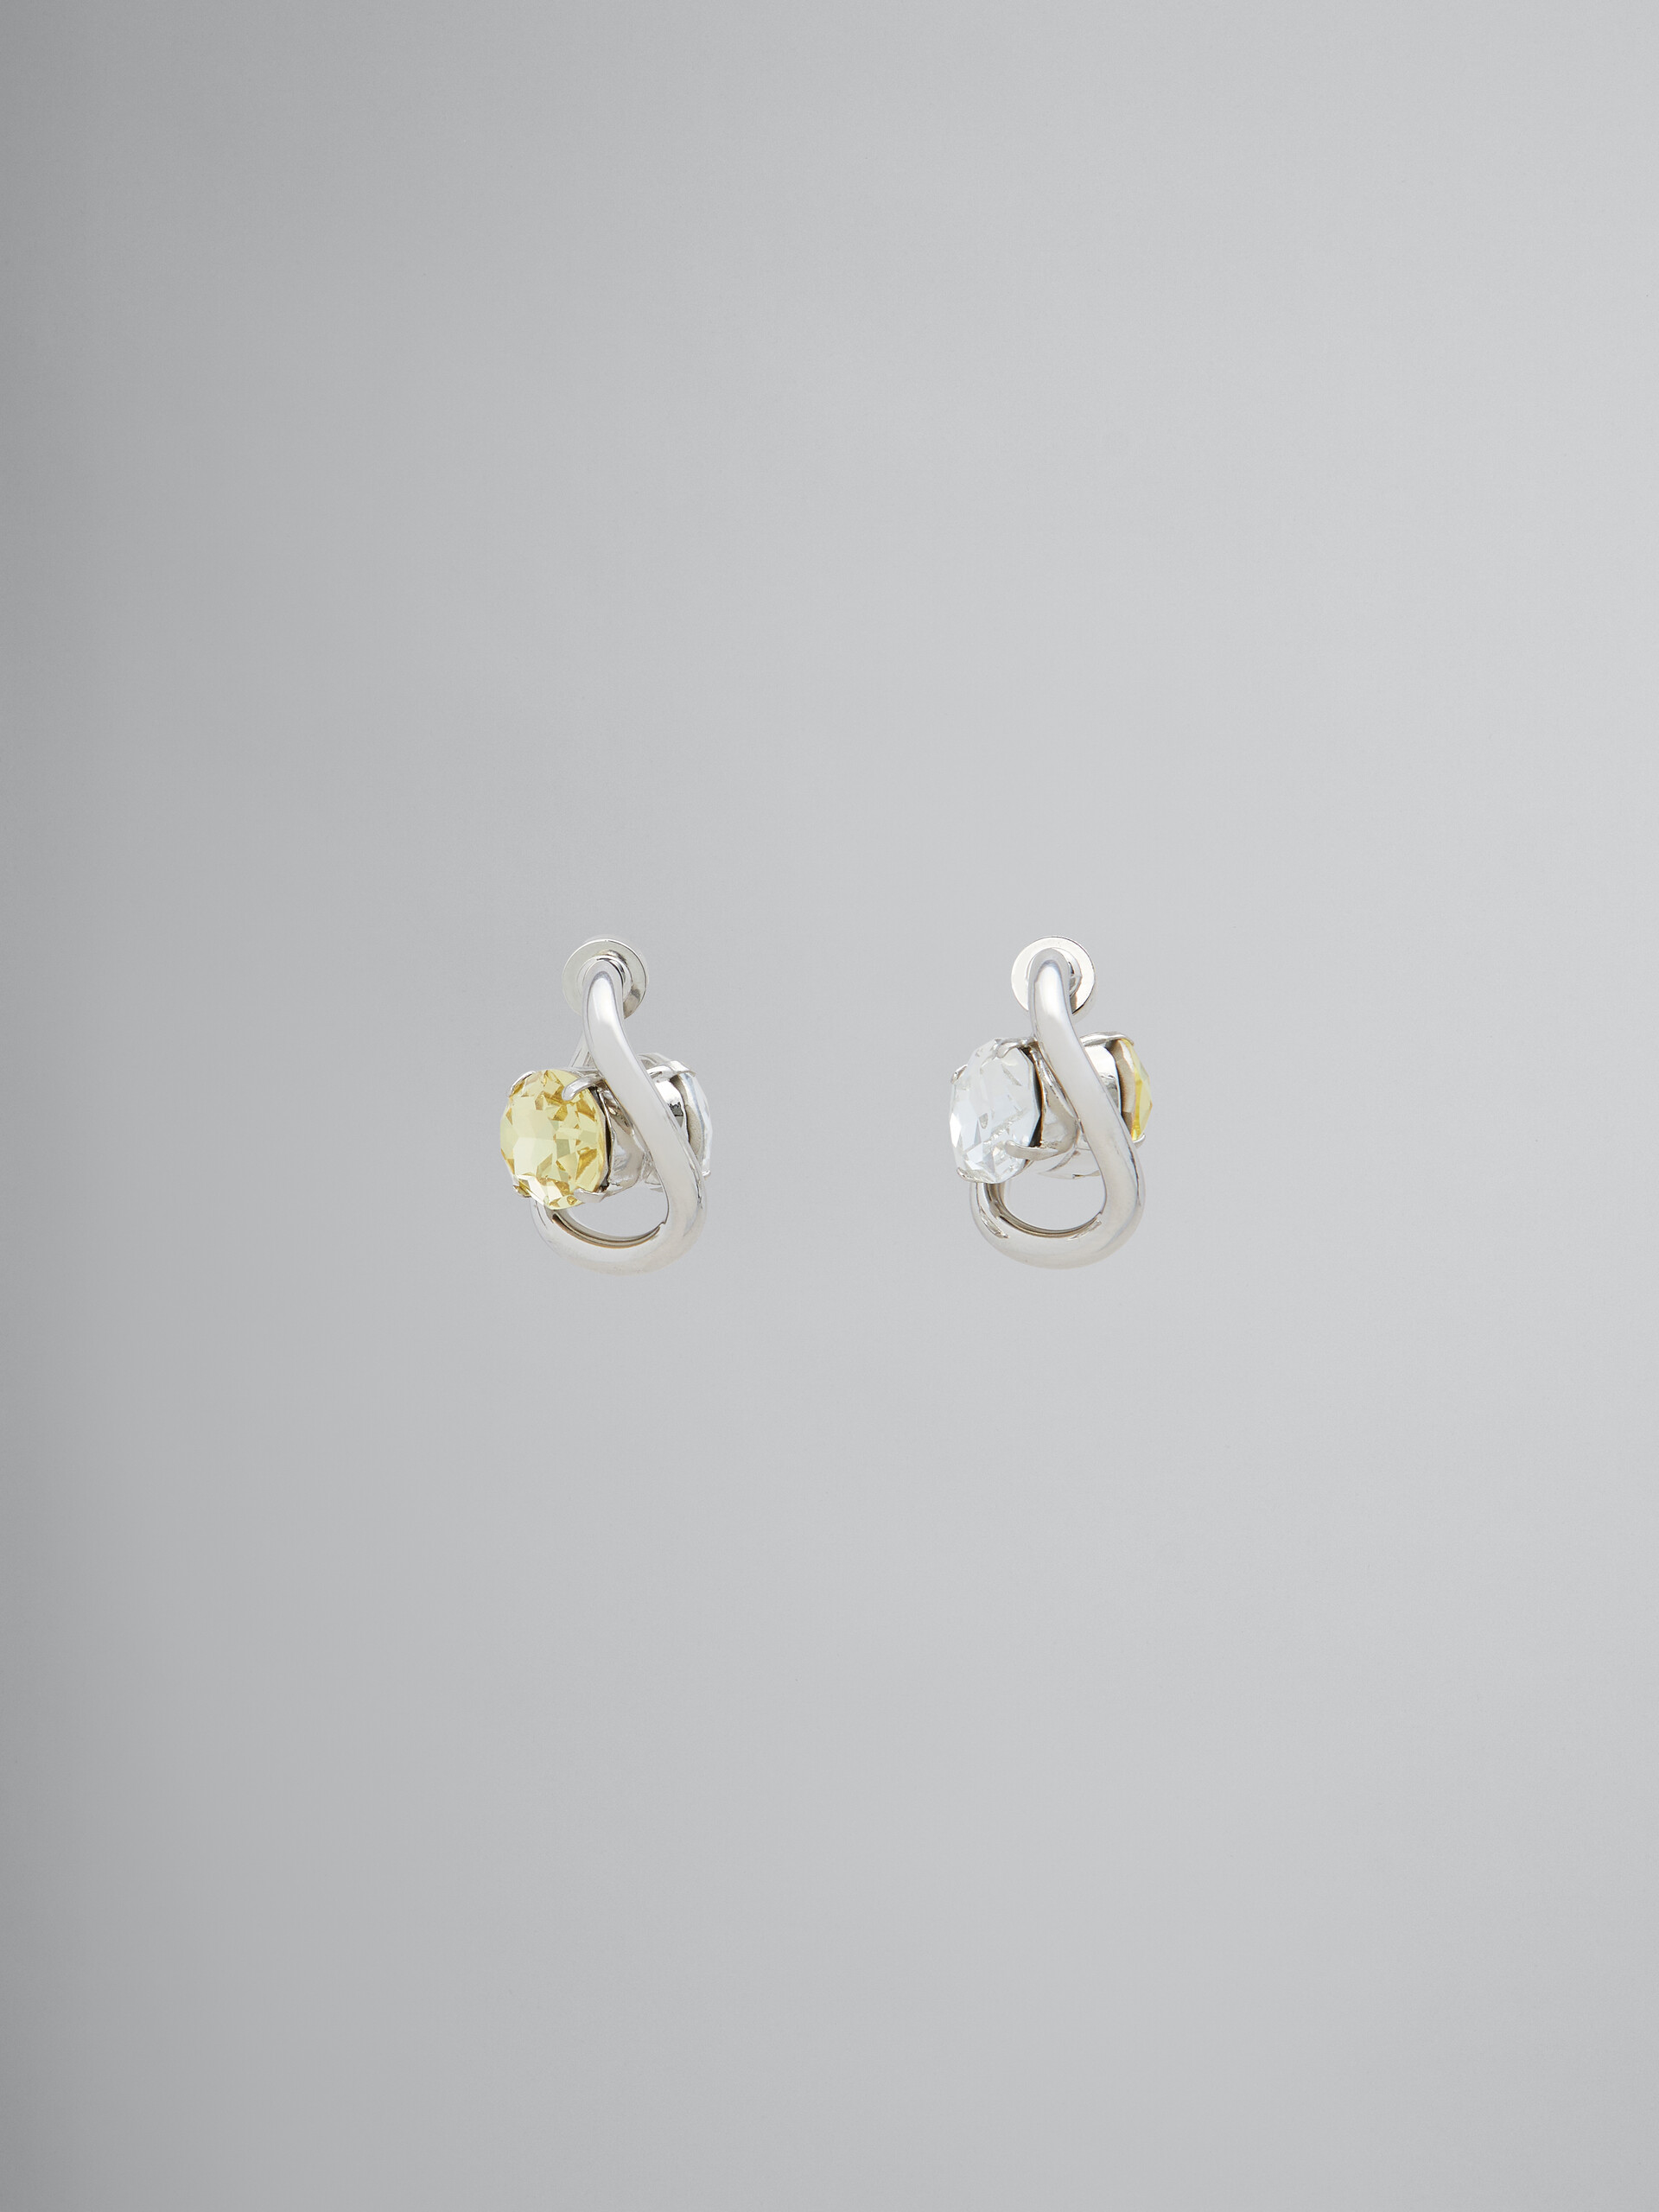 Boucles d’oreilles créoles torsadées avec strass transparents et jaunes - Boucles d’oreilles - Image 1